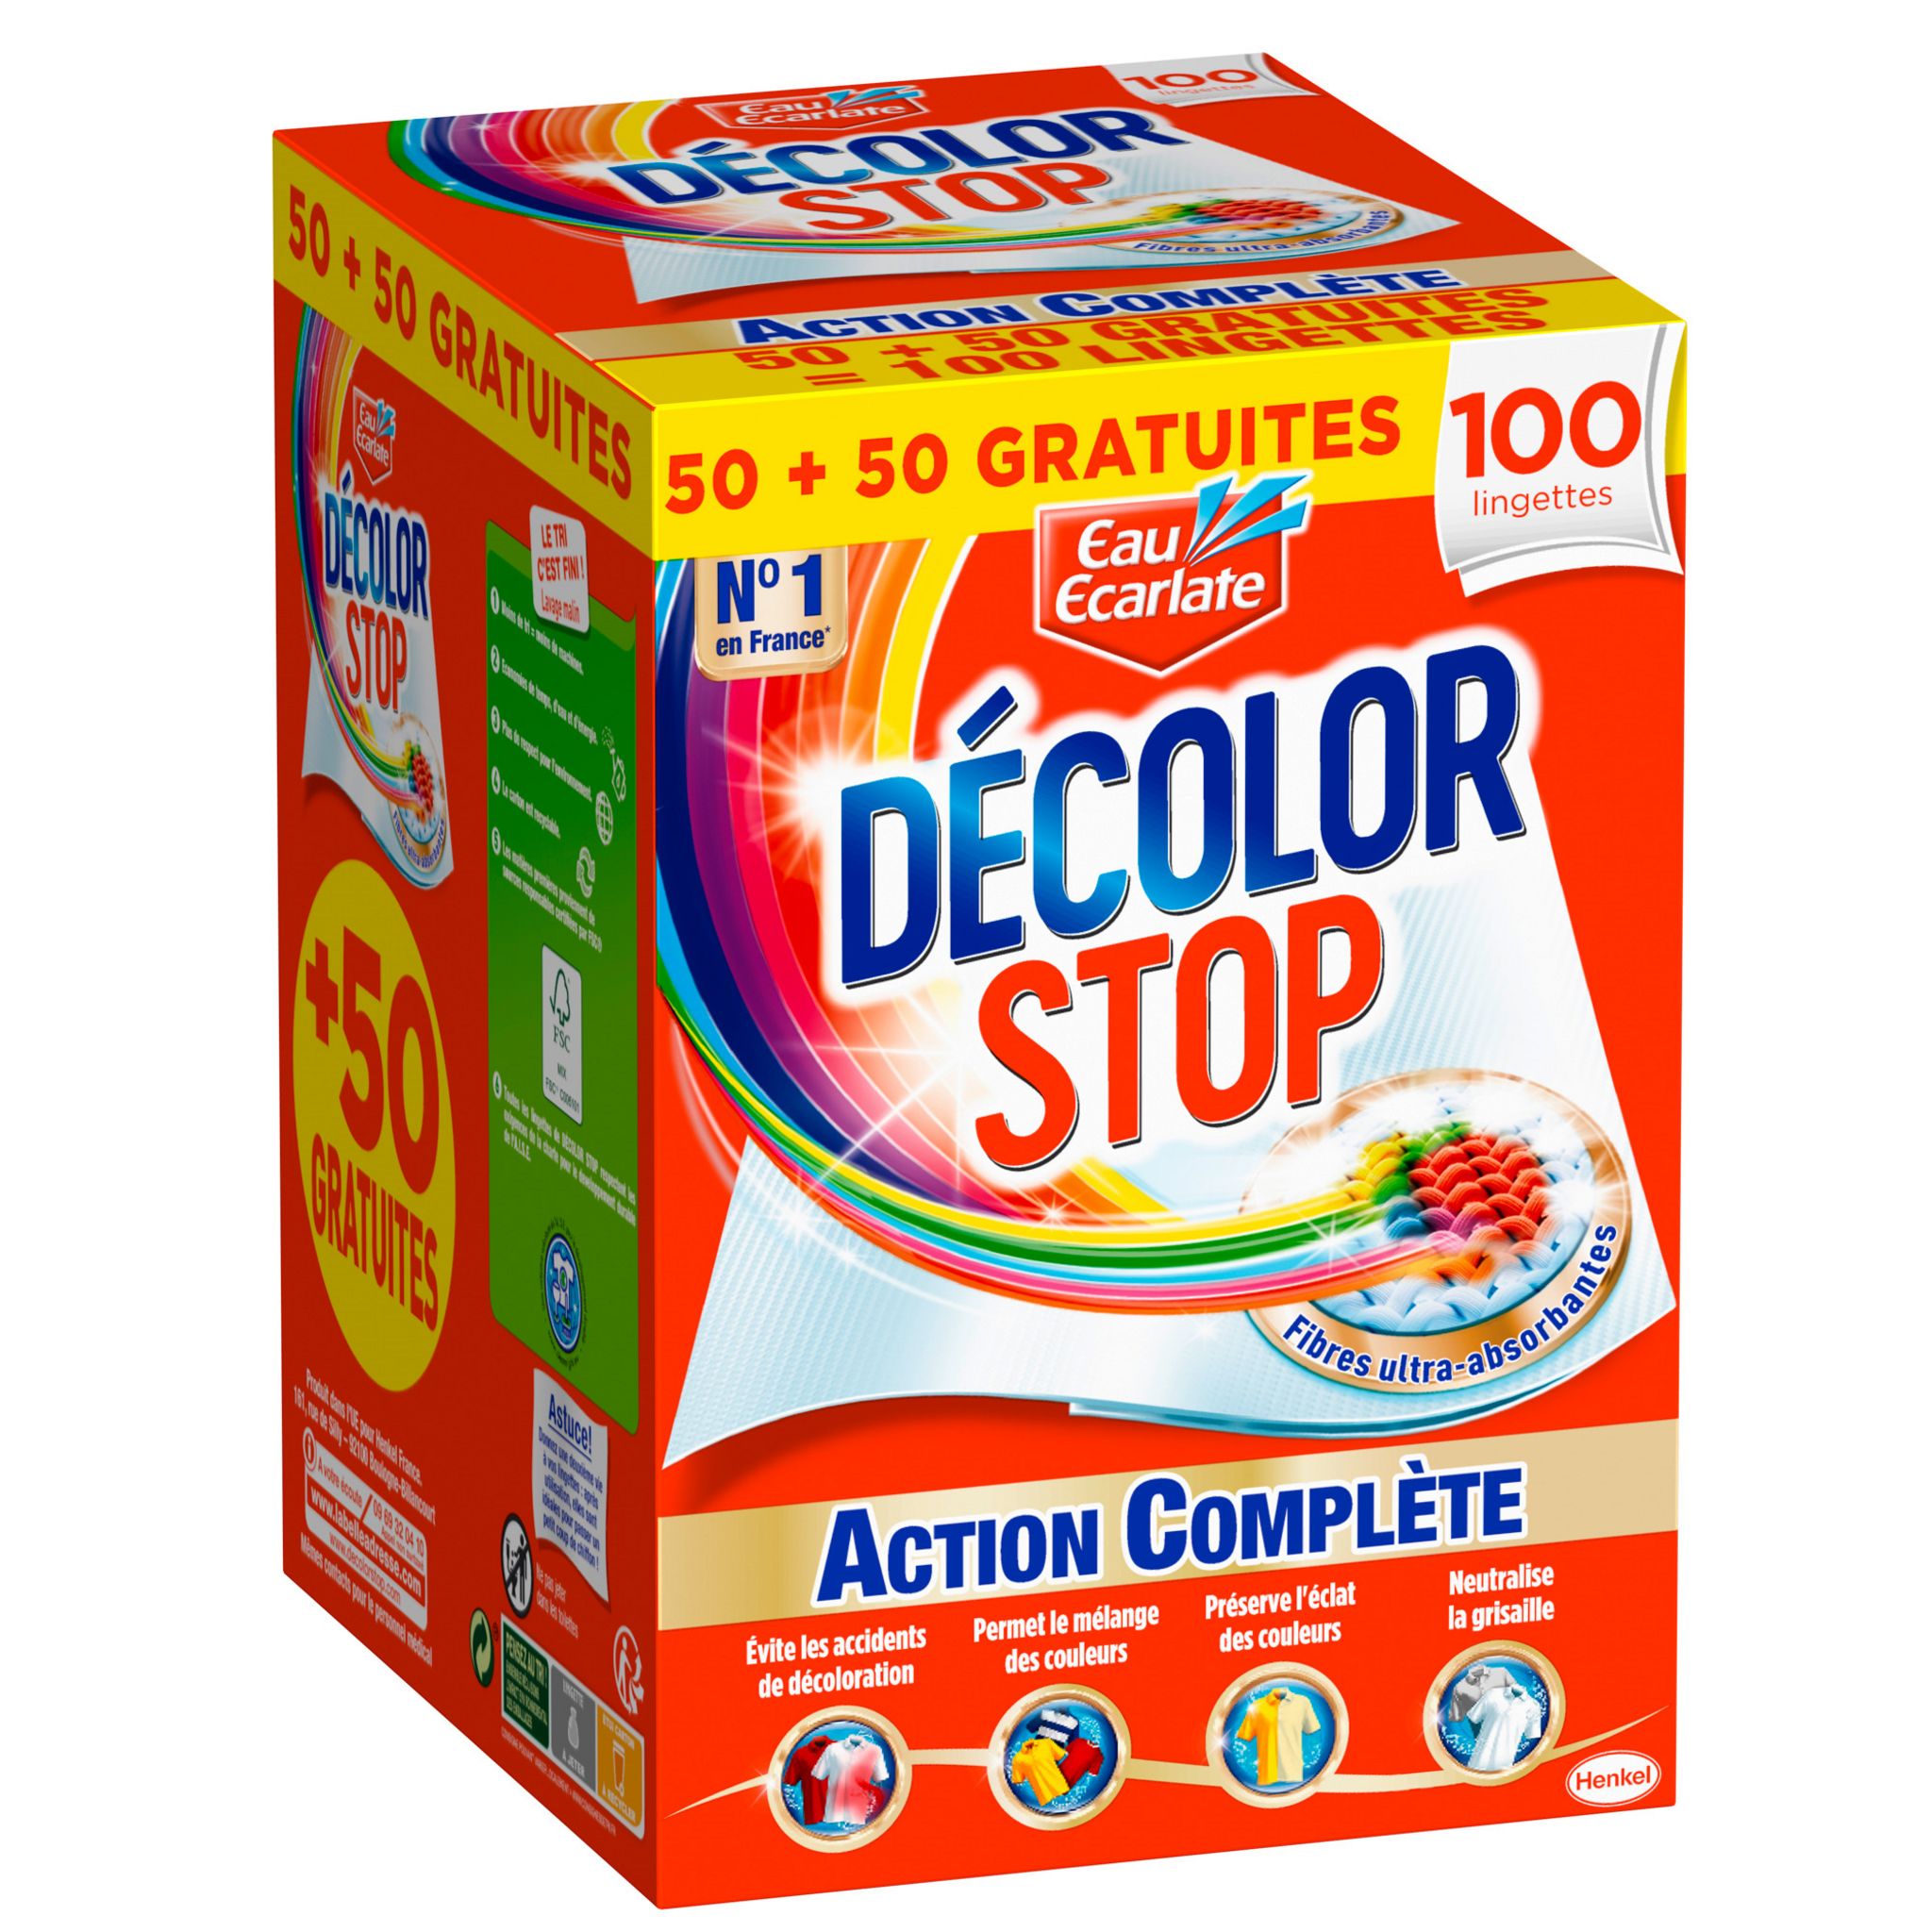 DECOLOR STOP Lingette anti-décoloration action complète 50